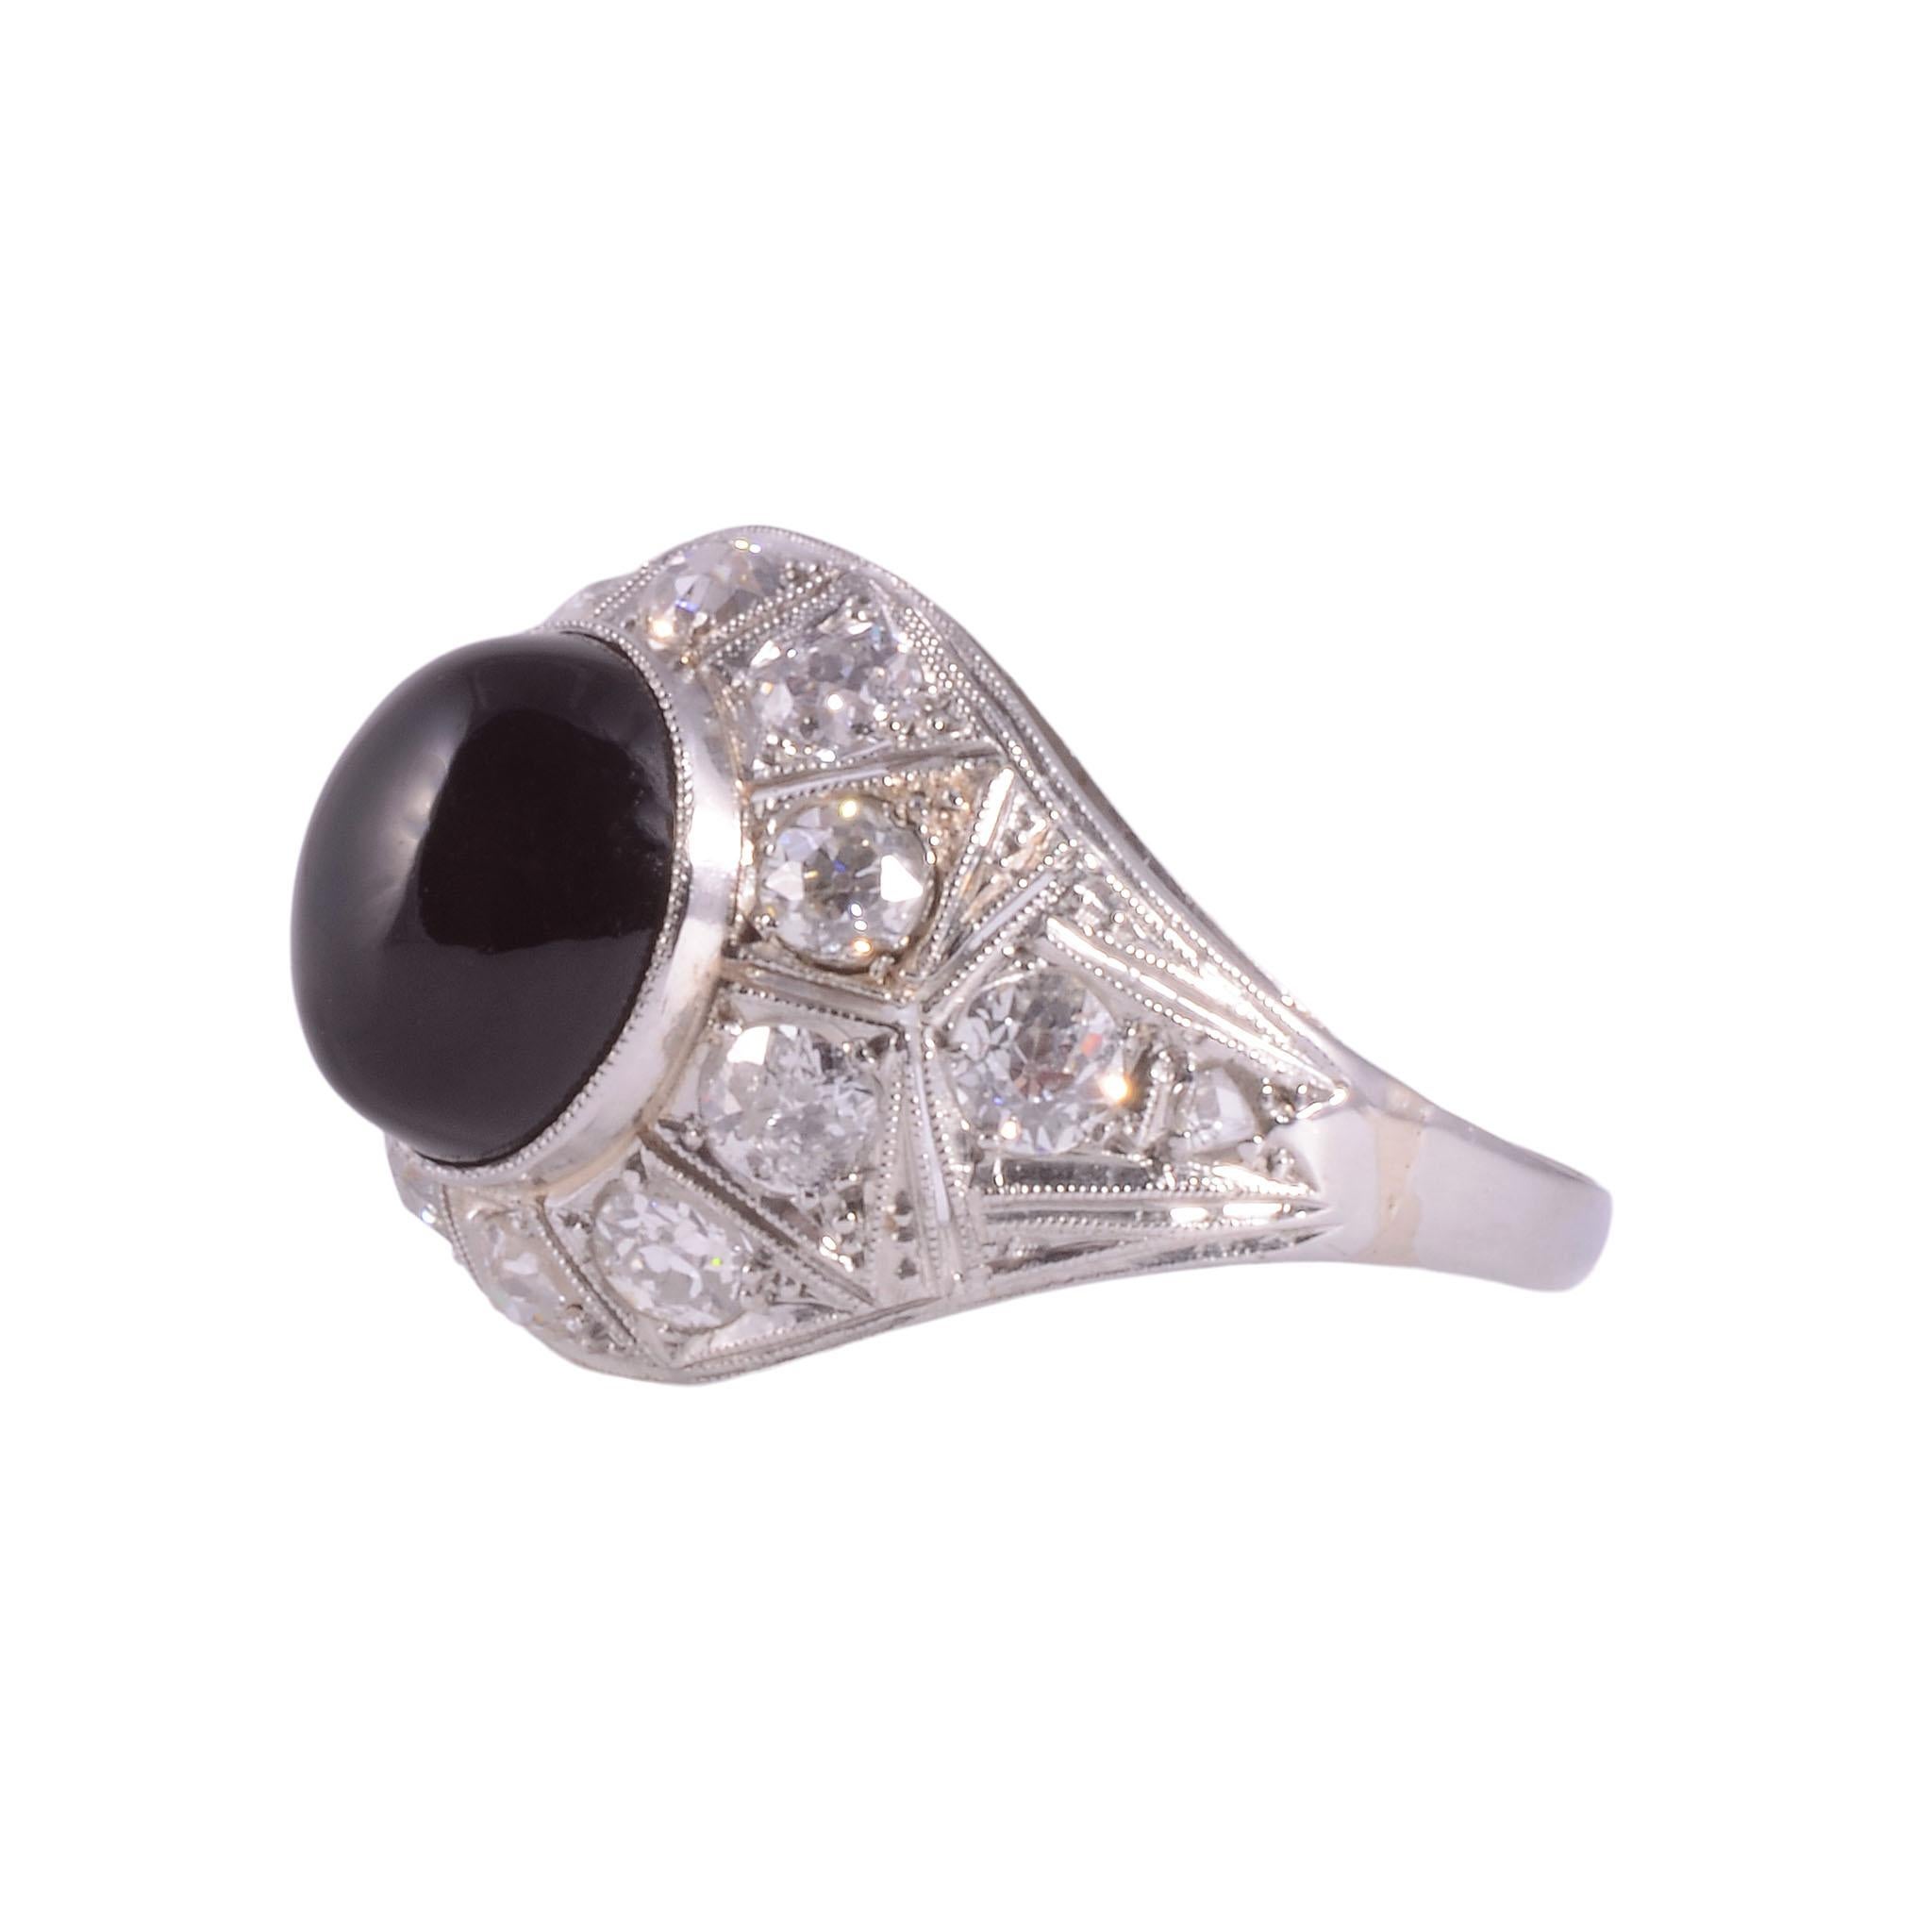 Vintage Art Deco Onyx & Diamant Platinring, um 1935. Dieser Art-Déco-Ring hat einen Onyx-Cabochon in der Mitte, der 10,40 mm x 8,85 mm x 5,53 mm misst. Der Onyx ist mit 13 Diamanten mit einem Gesamtgewicht von 1,12 Karat verziert, darunter acht alte